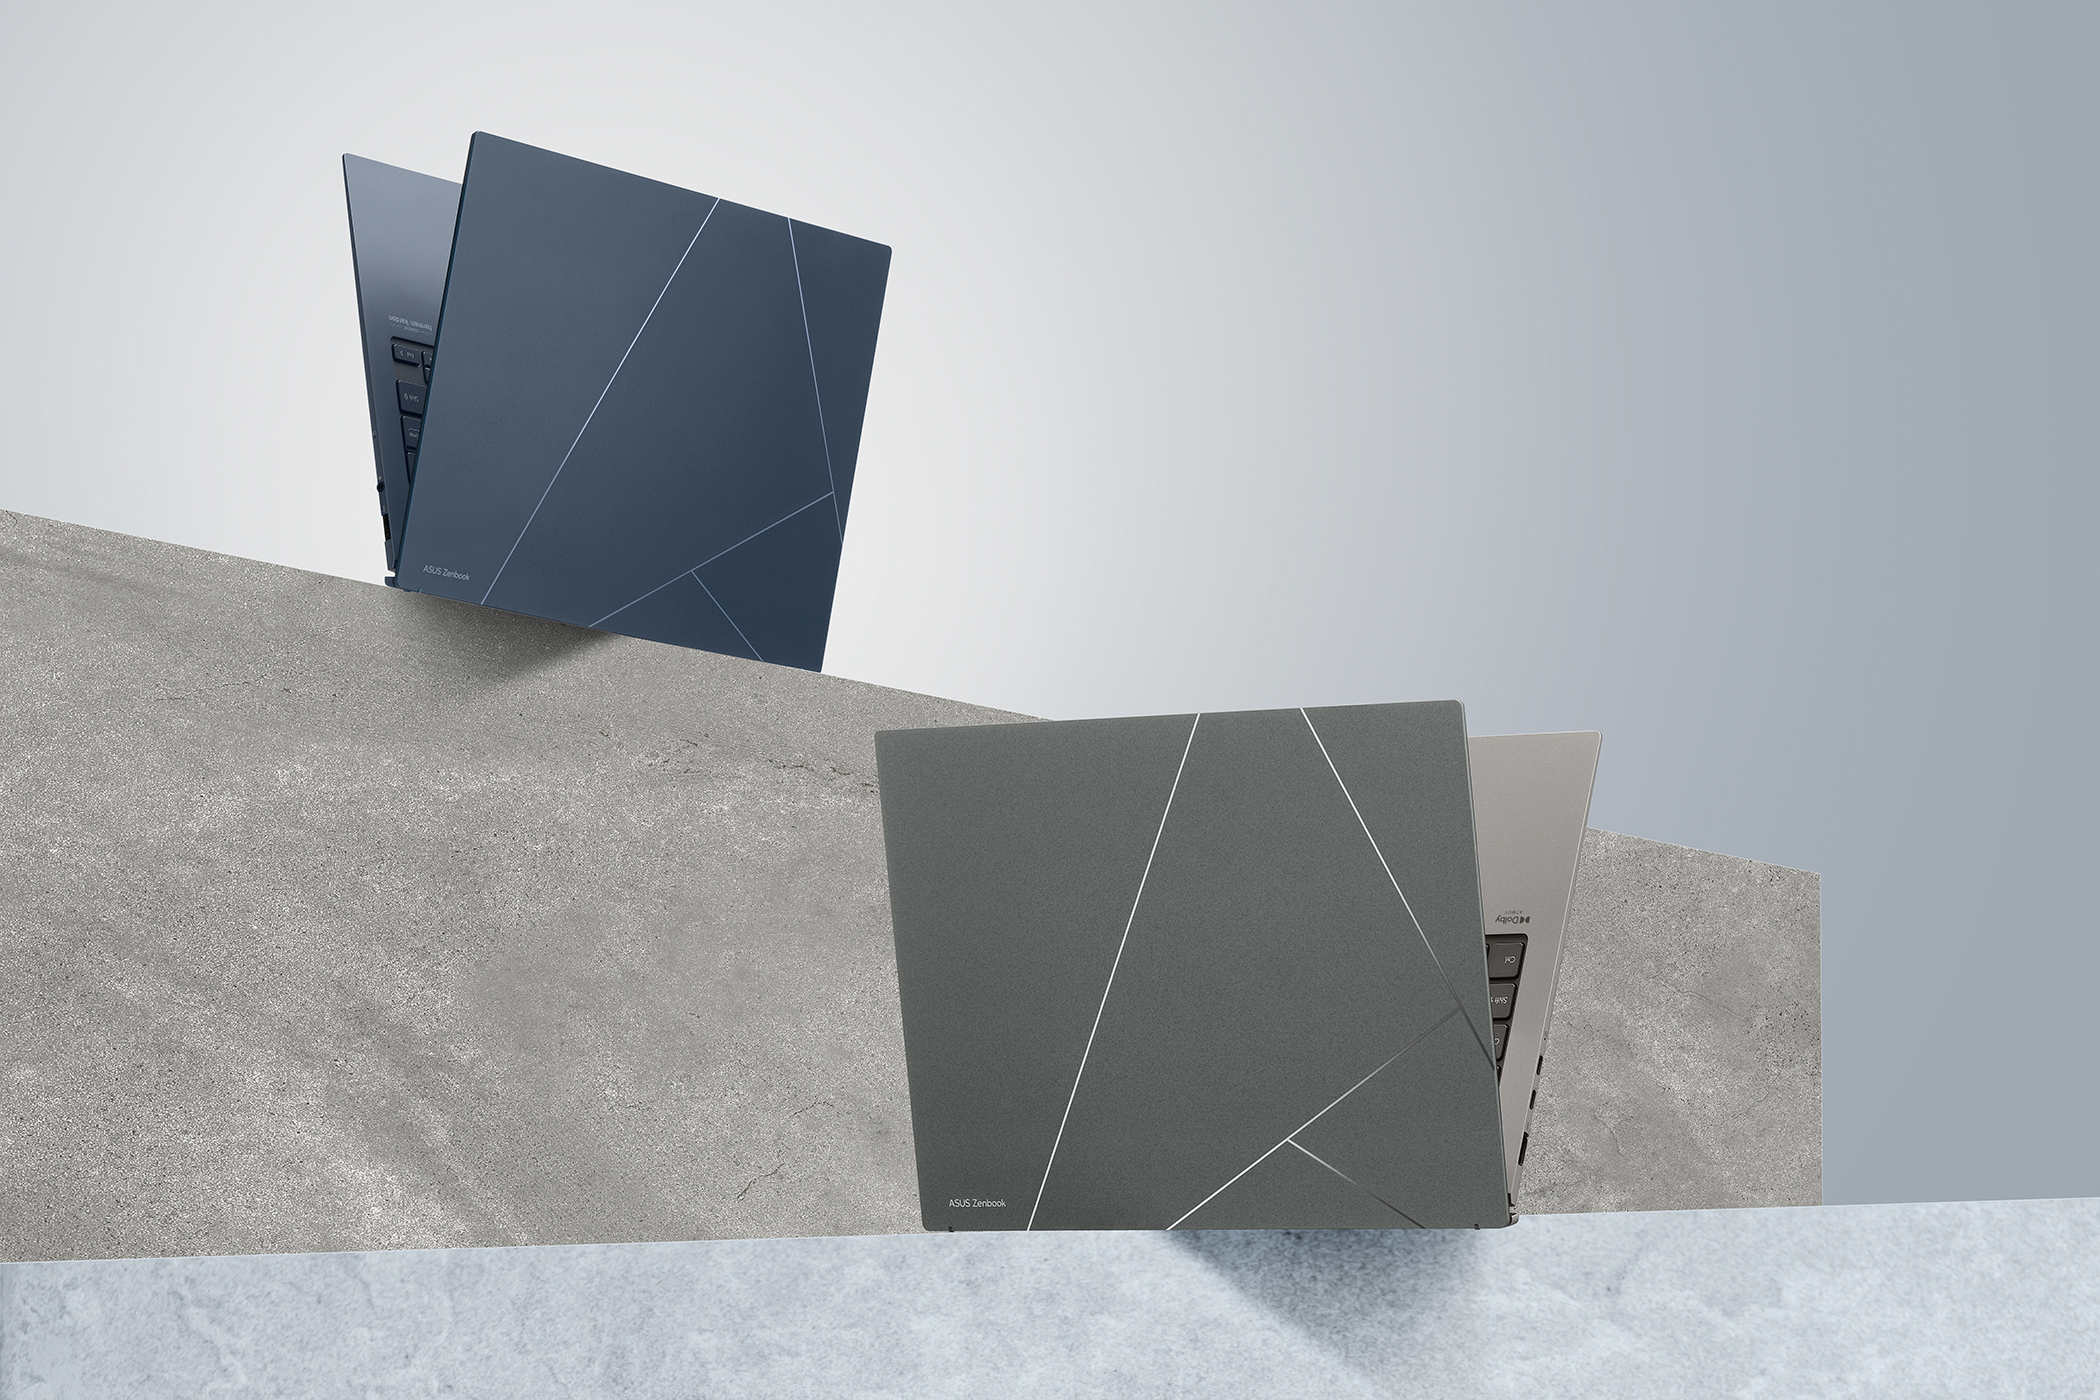 Das neue Zenbook S 13 OLED von Asus ist das dünnste OLED-Notebook der Welt